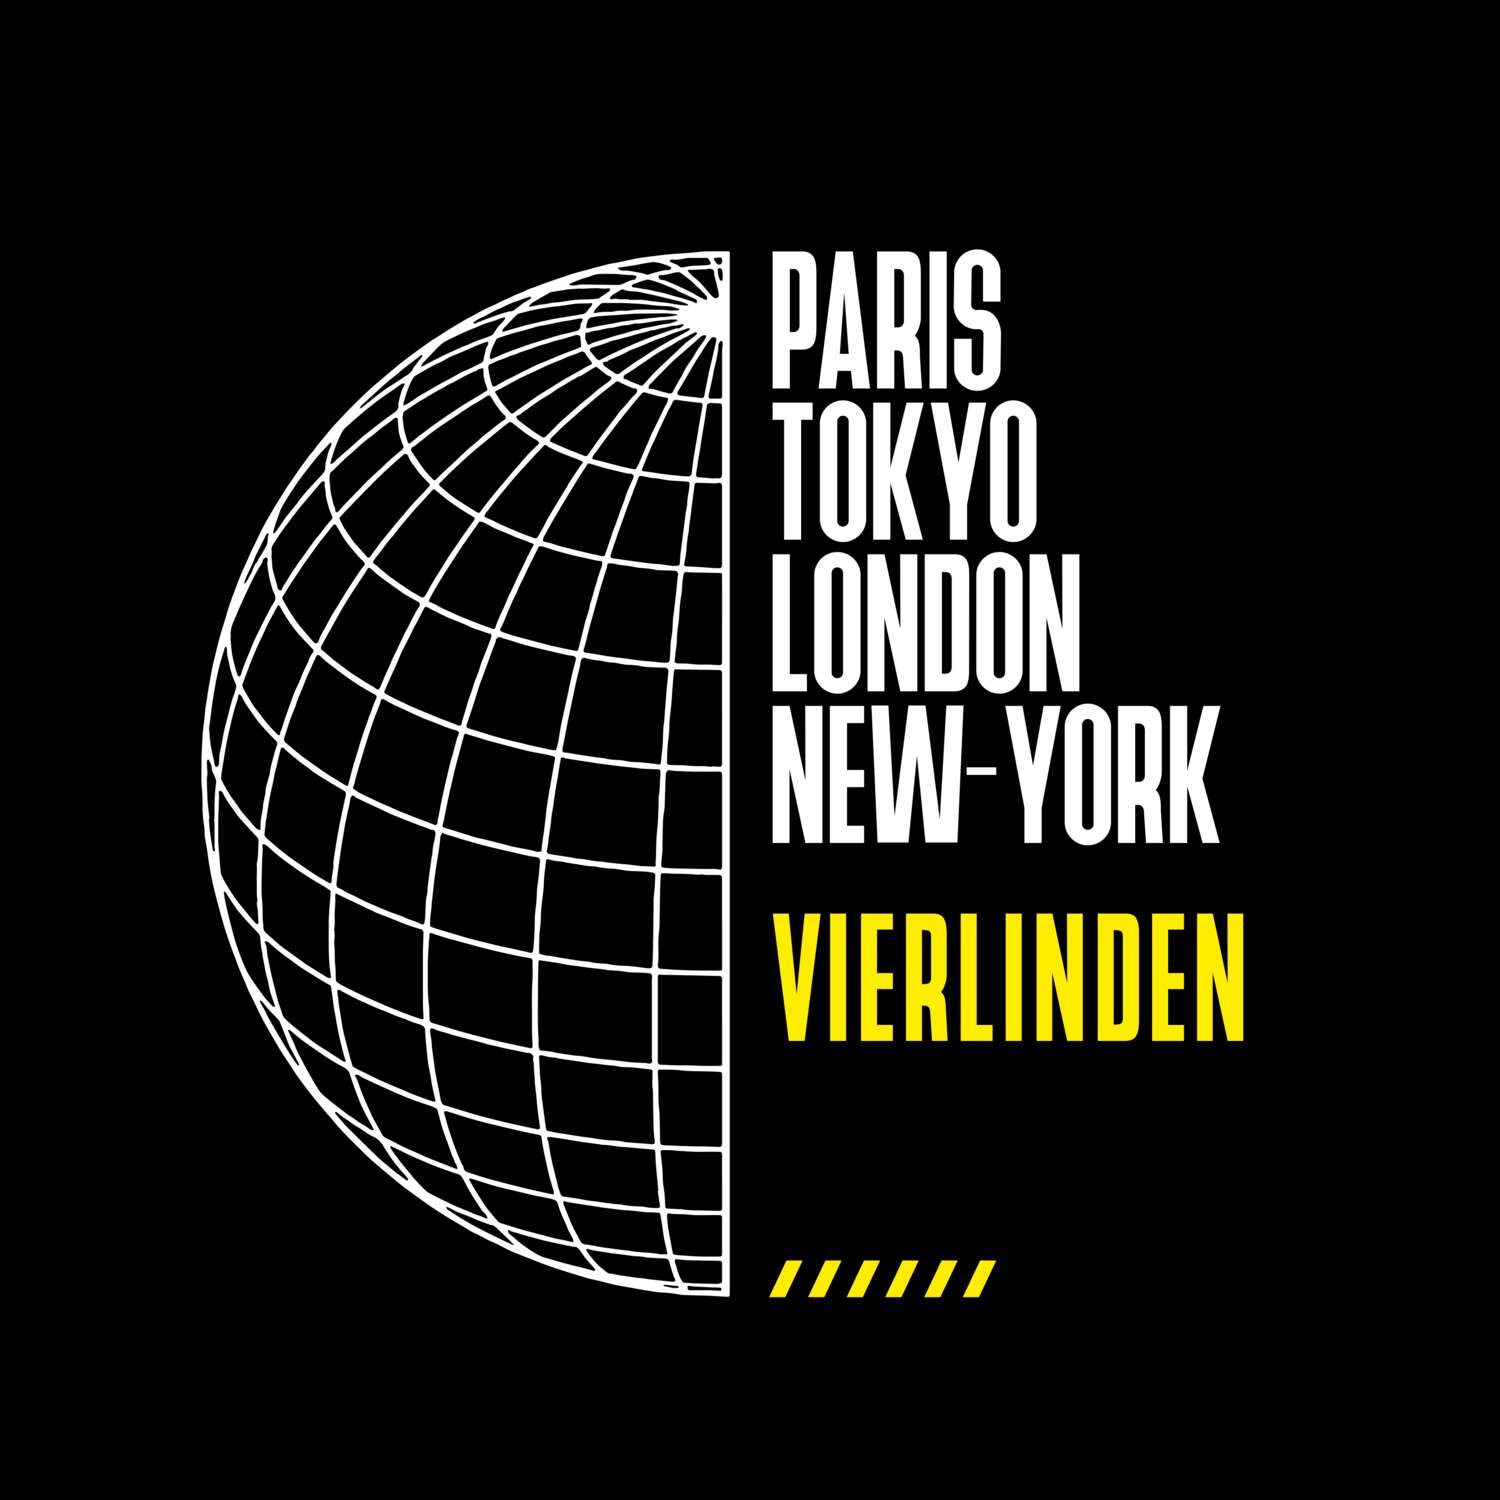 Vierlinden T-Shirt »Paris Tokyo London«